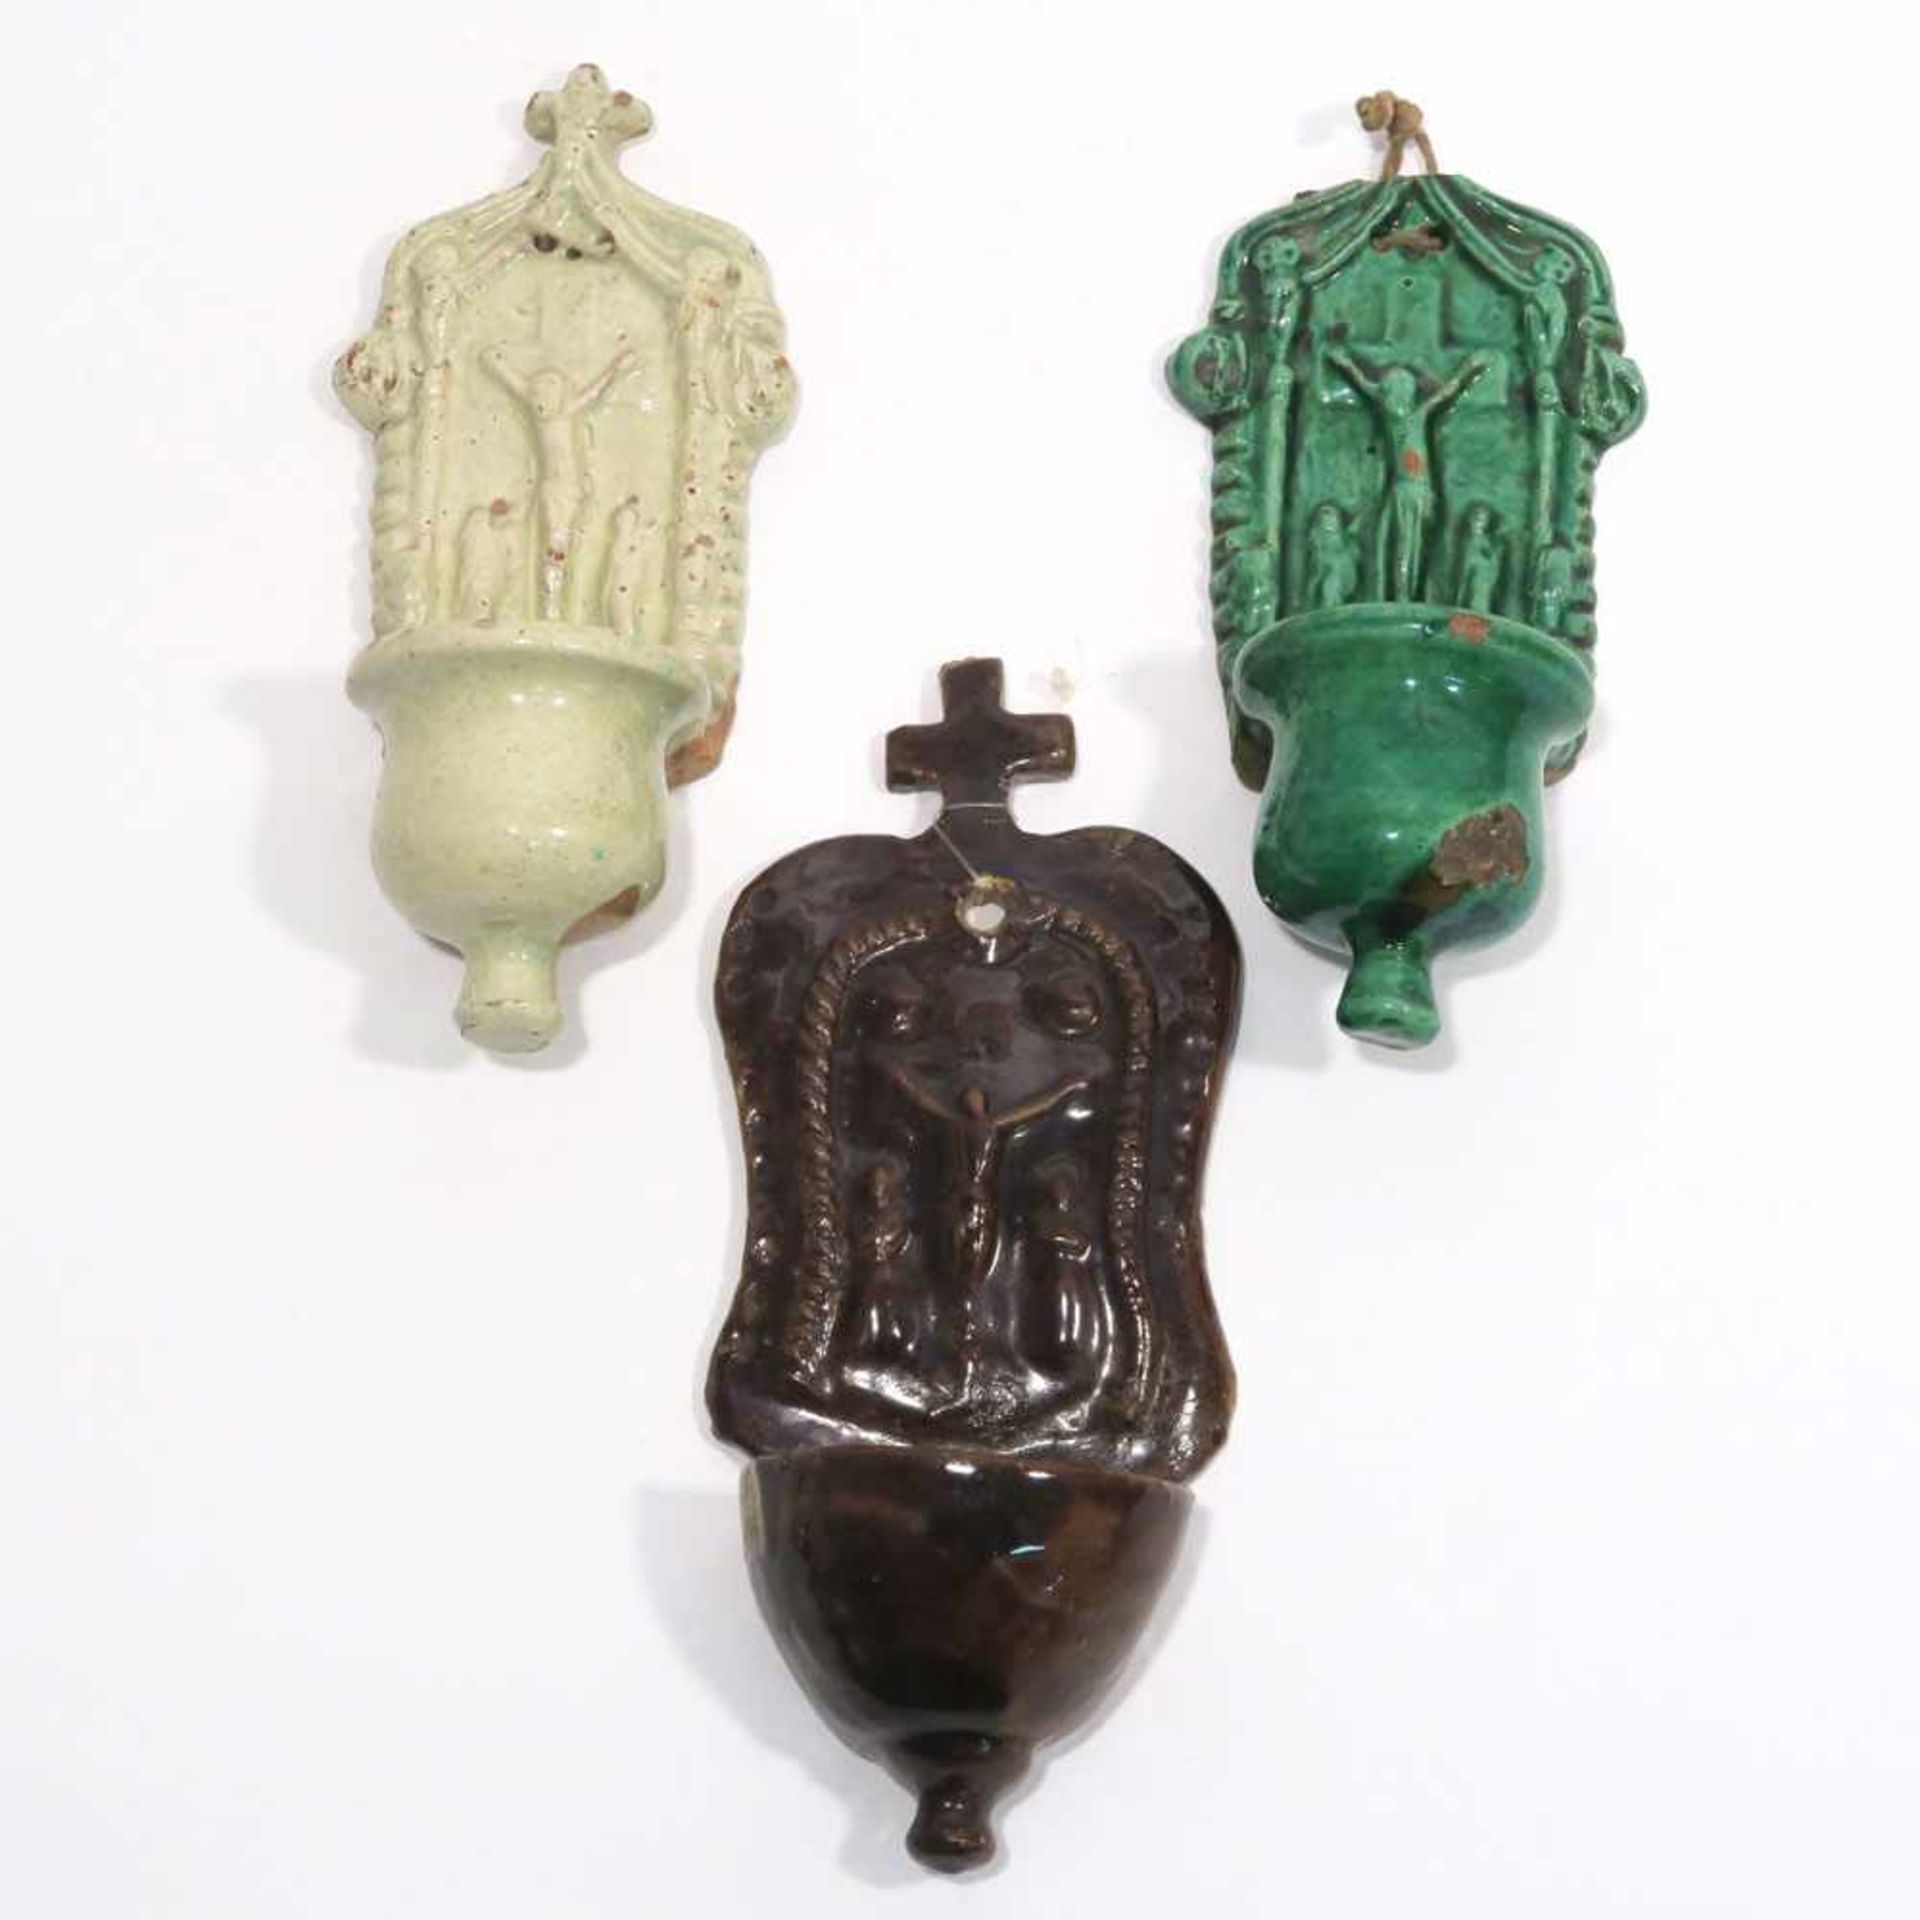 Drei Wand-WeihwasserbeckenWohl 19. Jh. Keramik, grün, braun bzw. grünlich-weiß glasiert. - Bild 2 aus 2